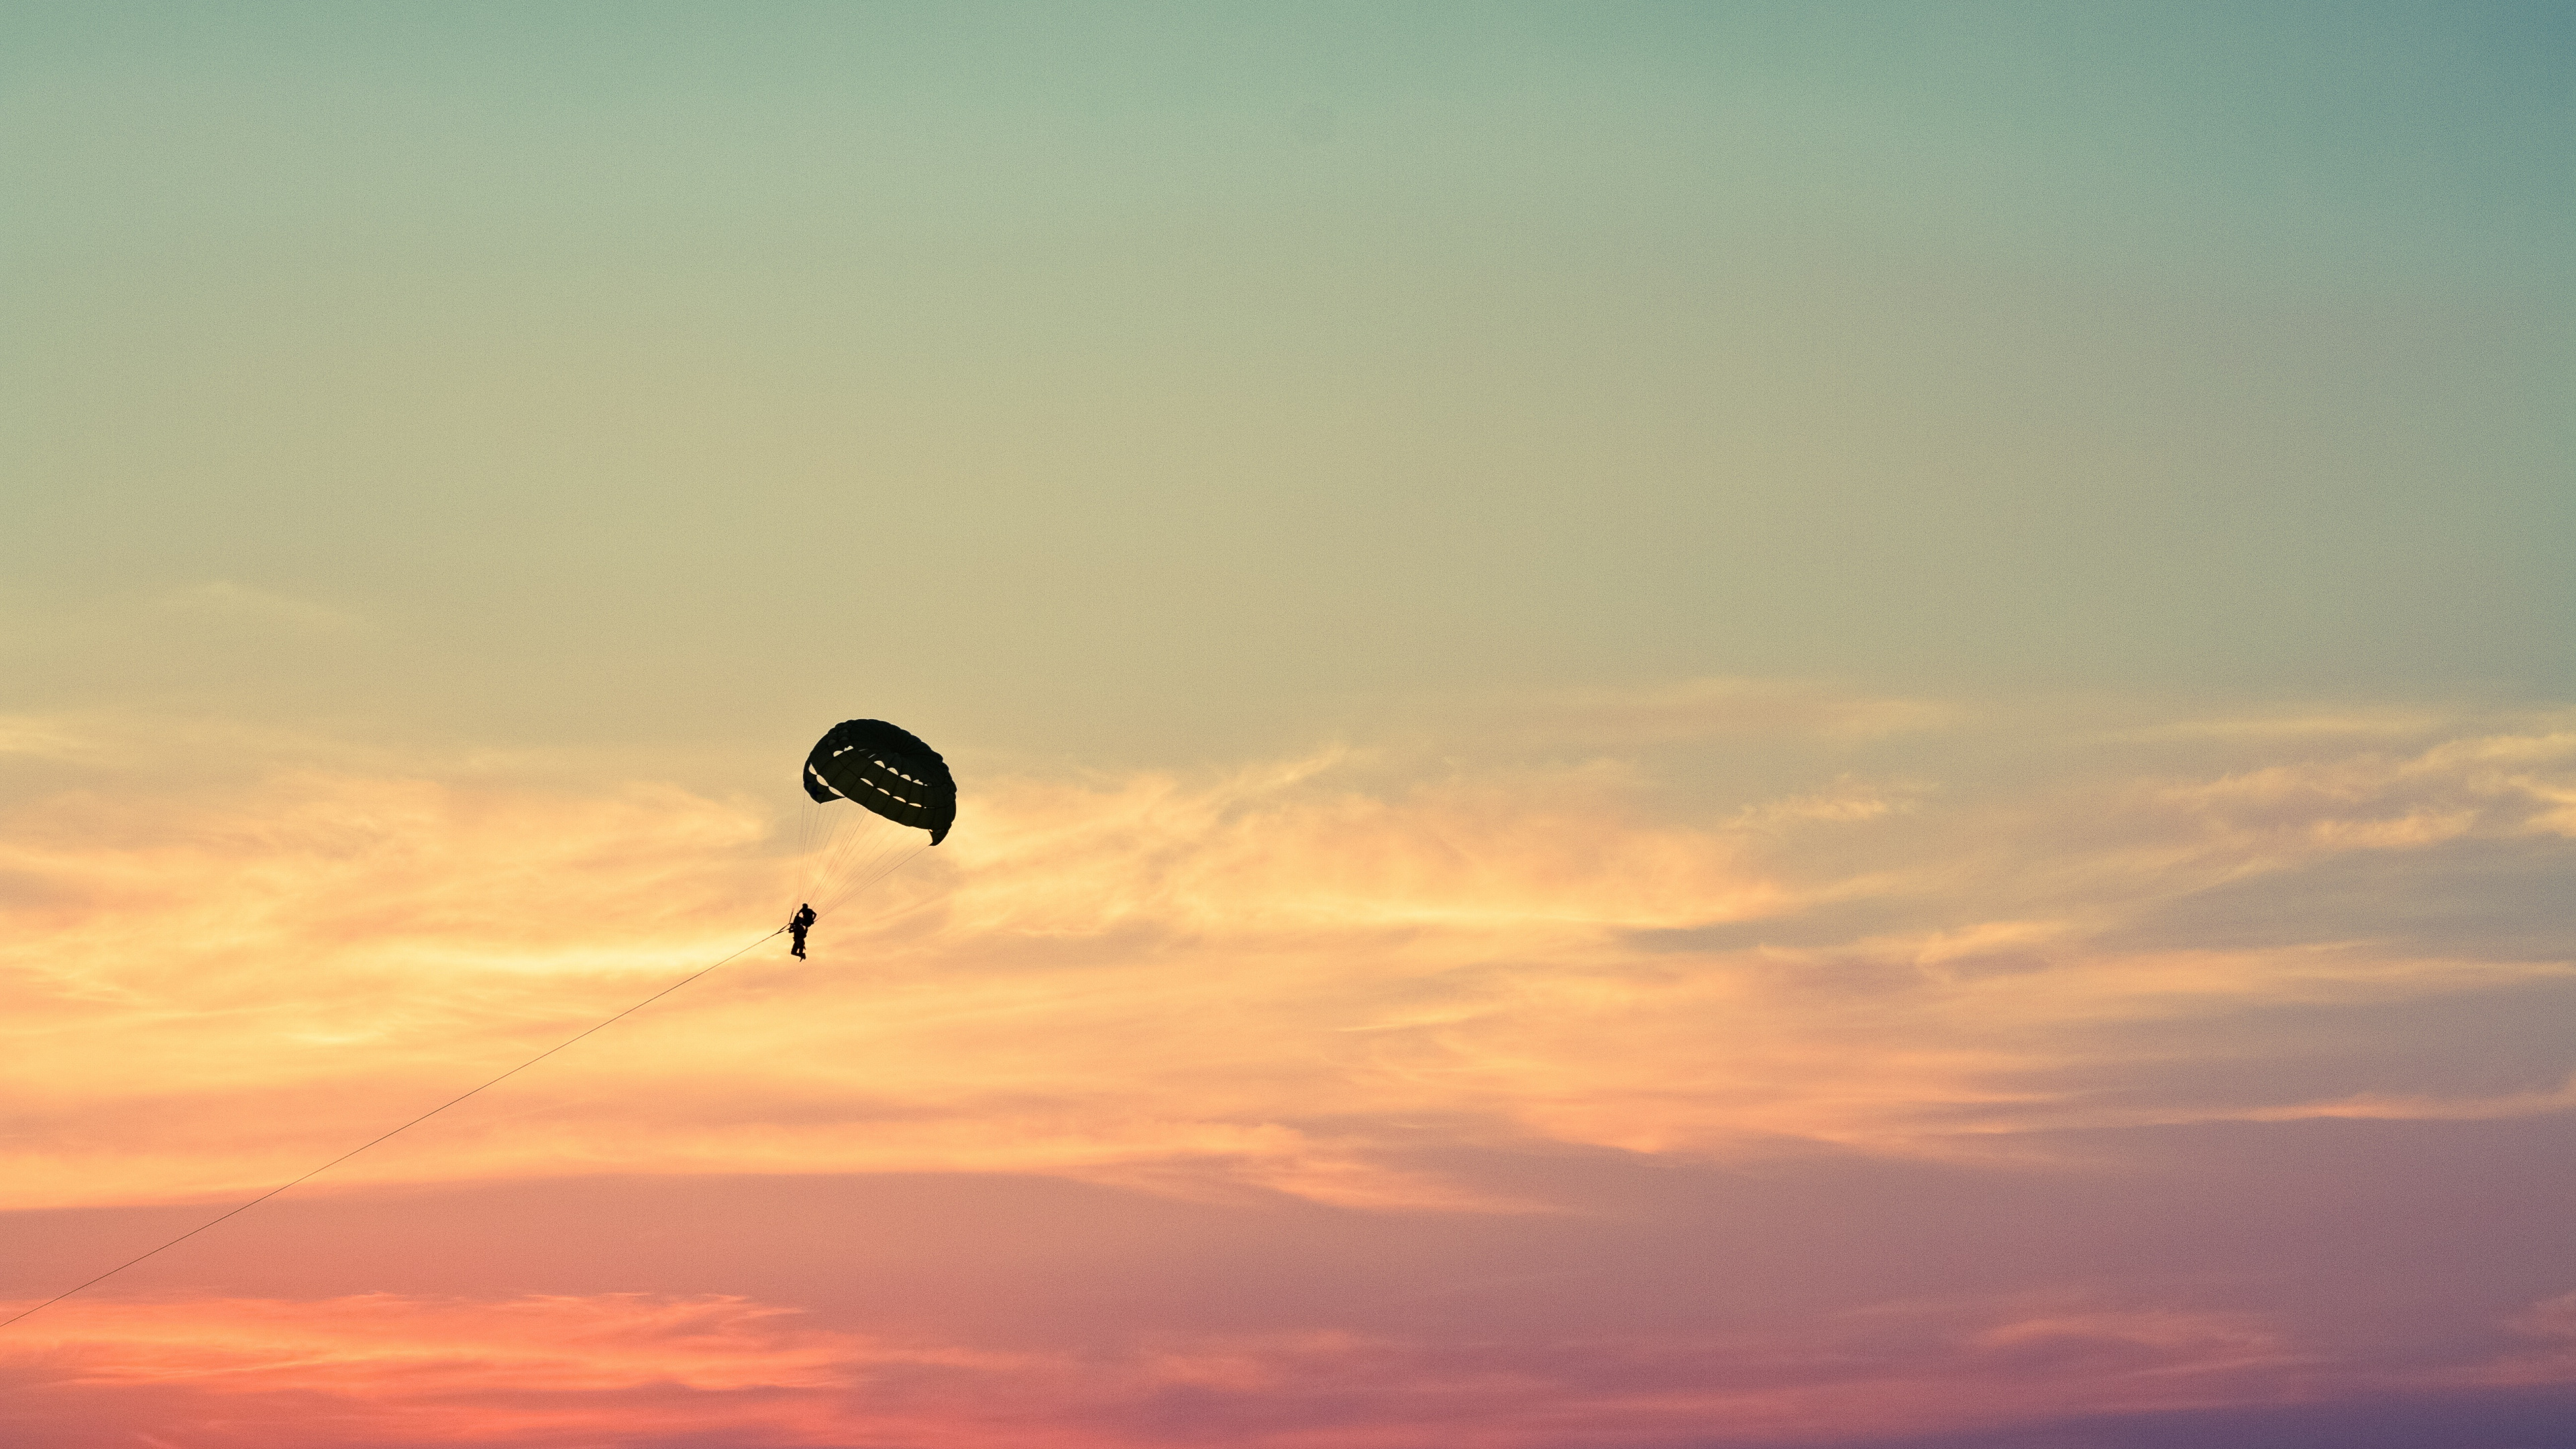 降落伞, 空中运动, 极限运动, 地平线, 伞兵 壁纸 3840x2160 允许